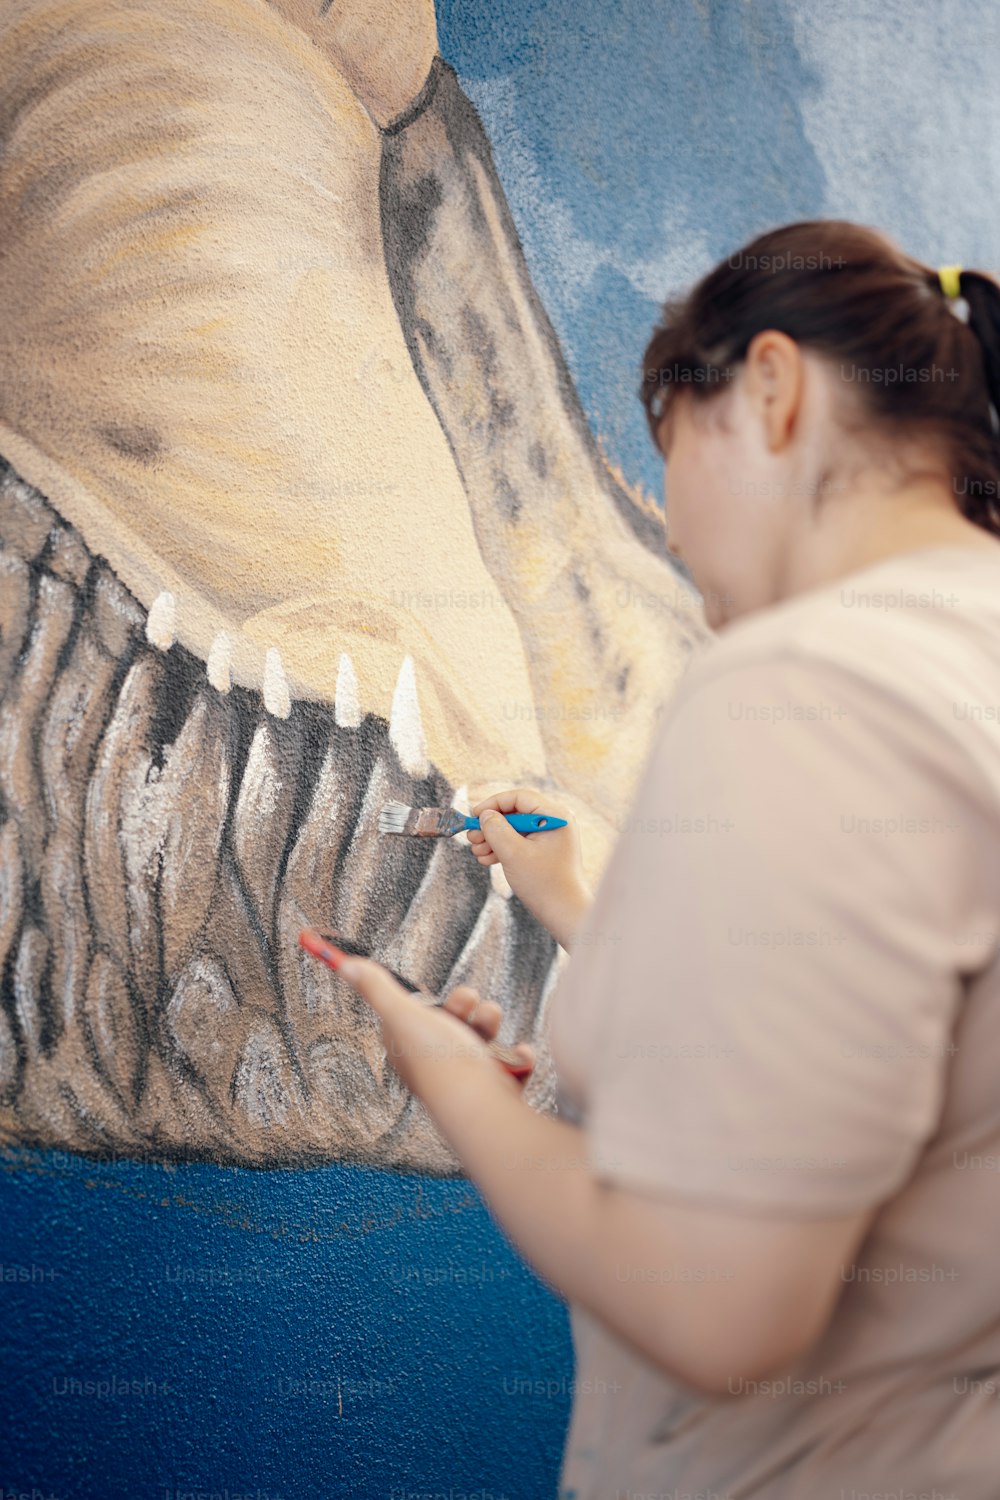 Una donna sta dipingendo l'immagine di un dinosauro